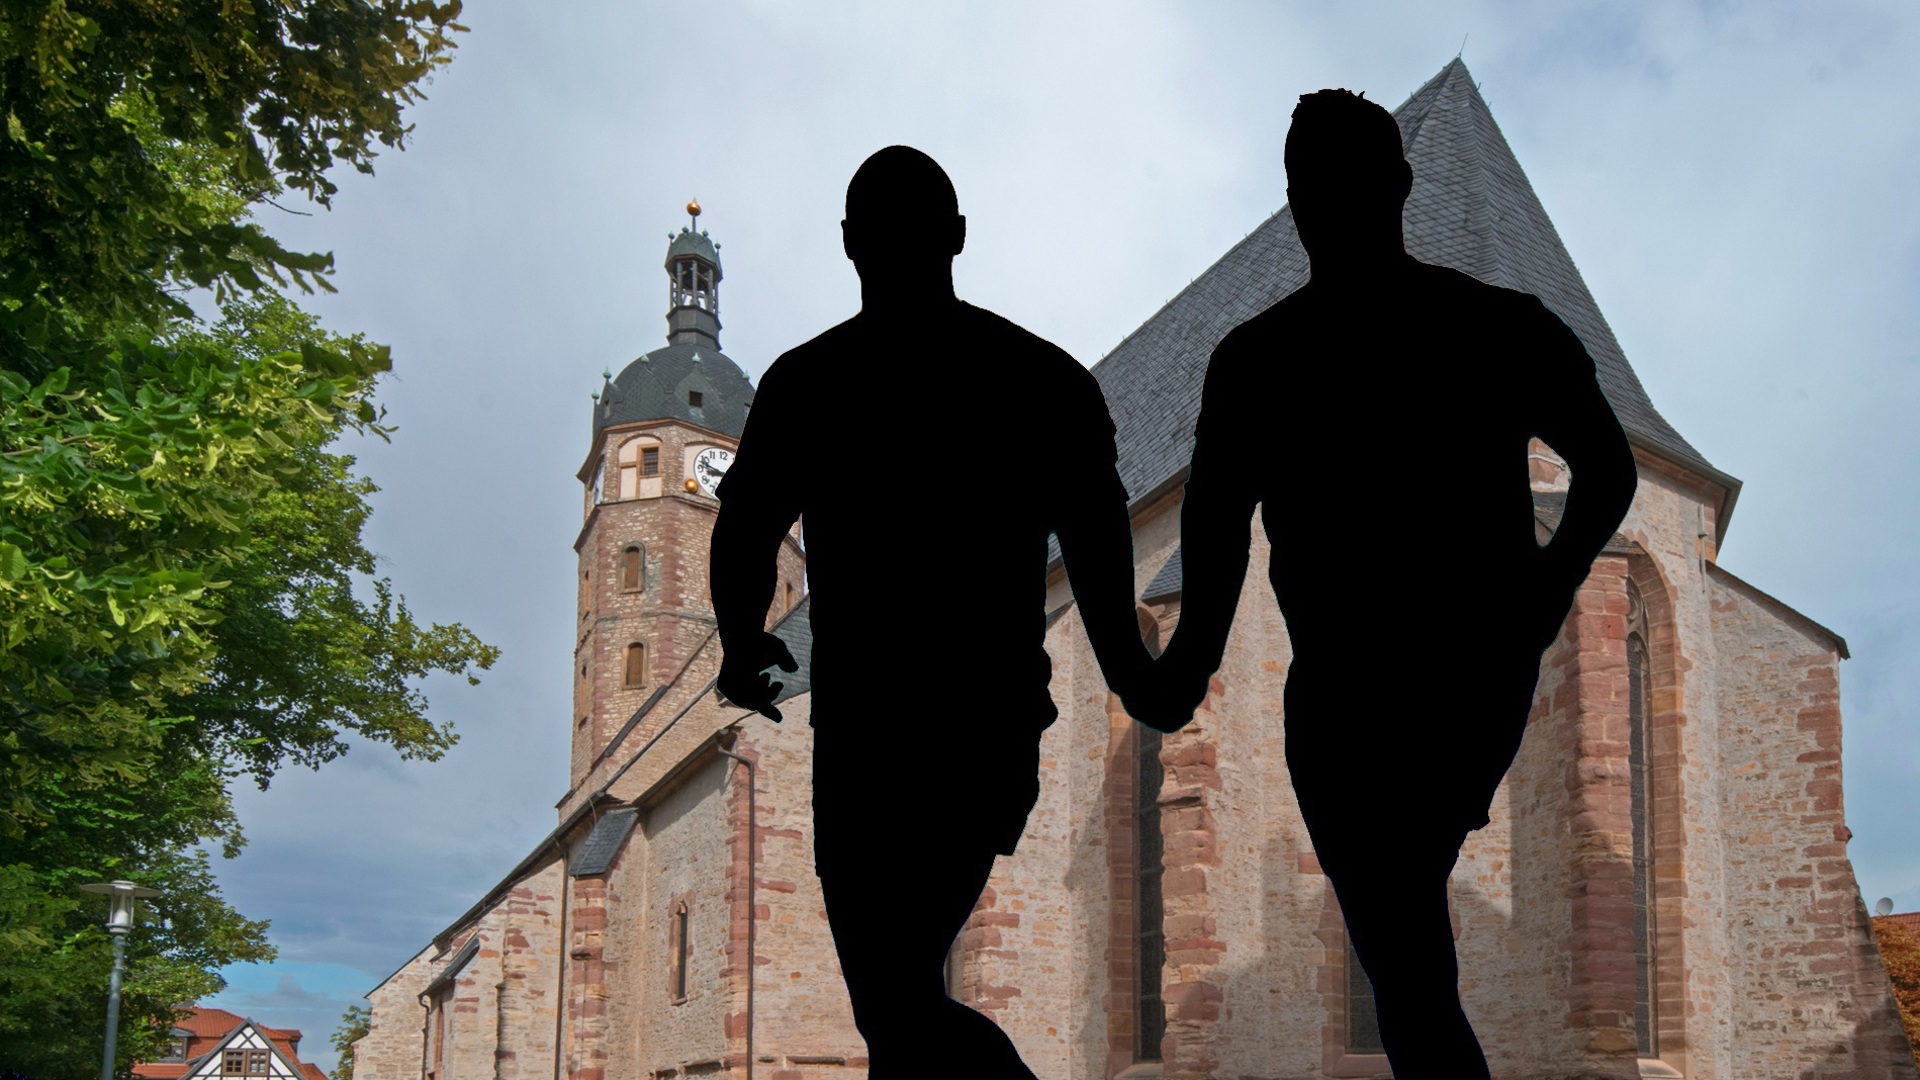 Kirche und Homosexualität